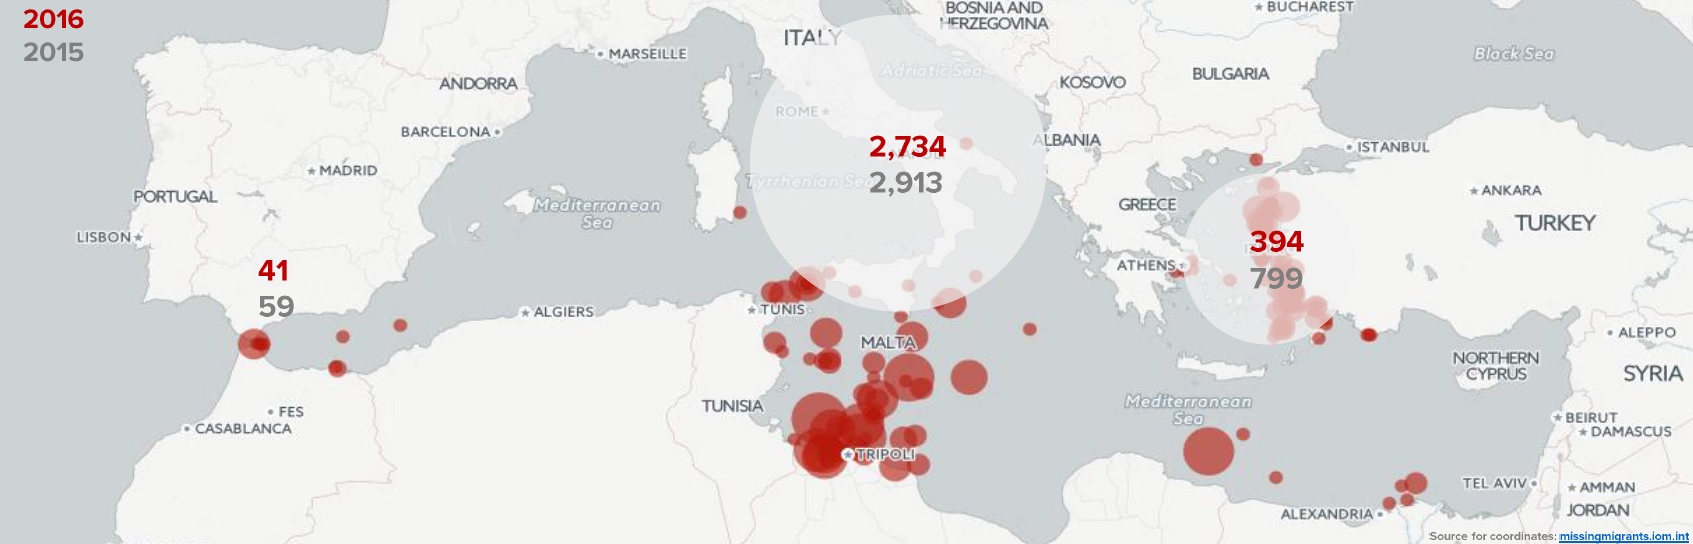 Morti e dispersi Mediterraneo gennaio agosto 2016 UNHCR OIM 9 2016